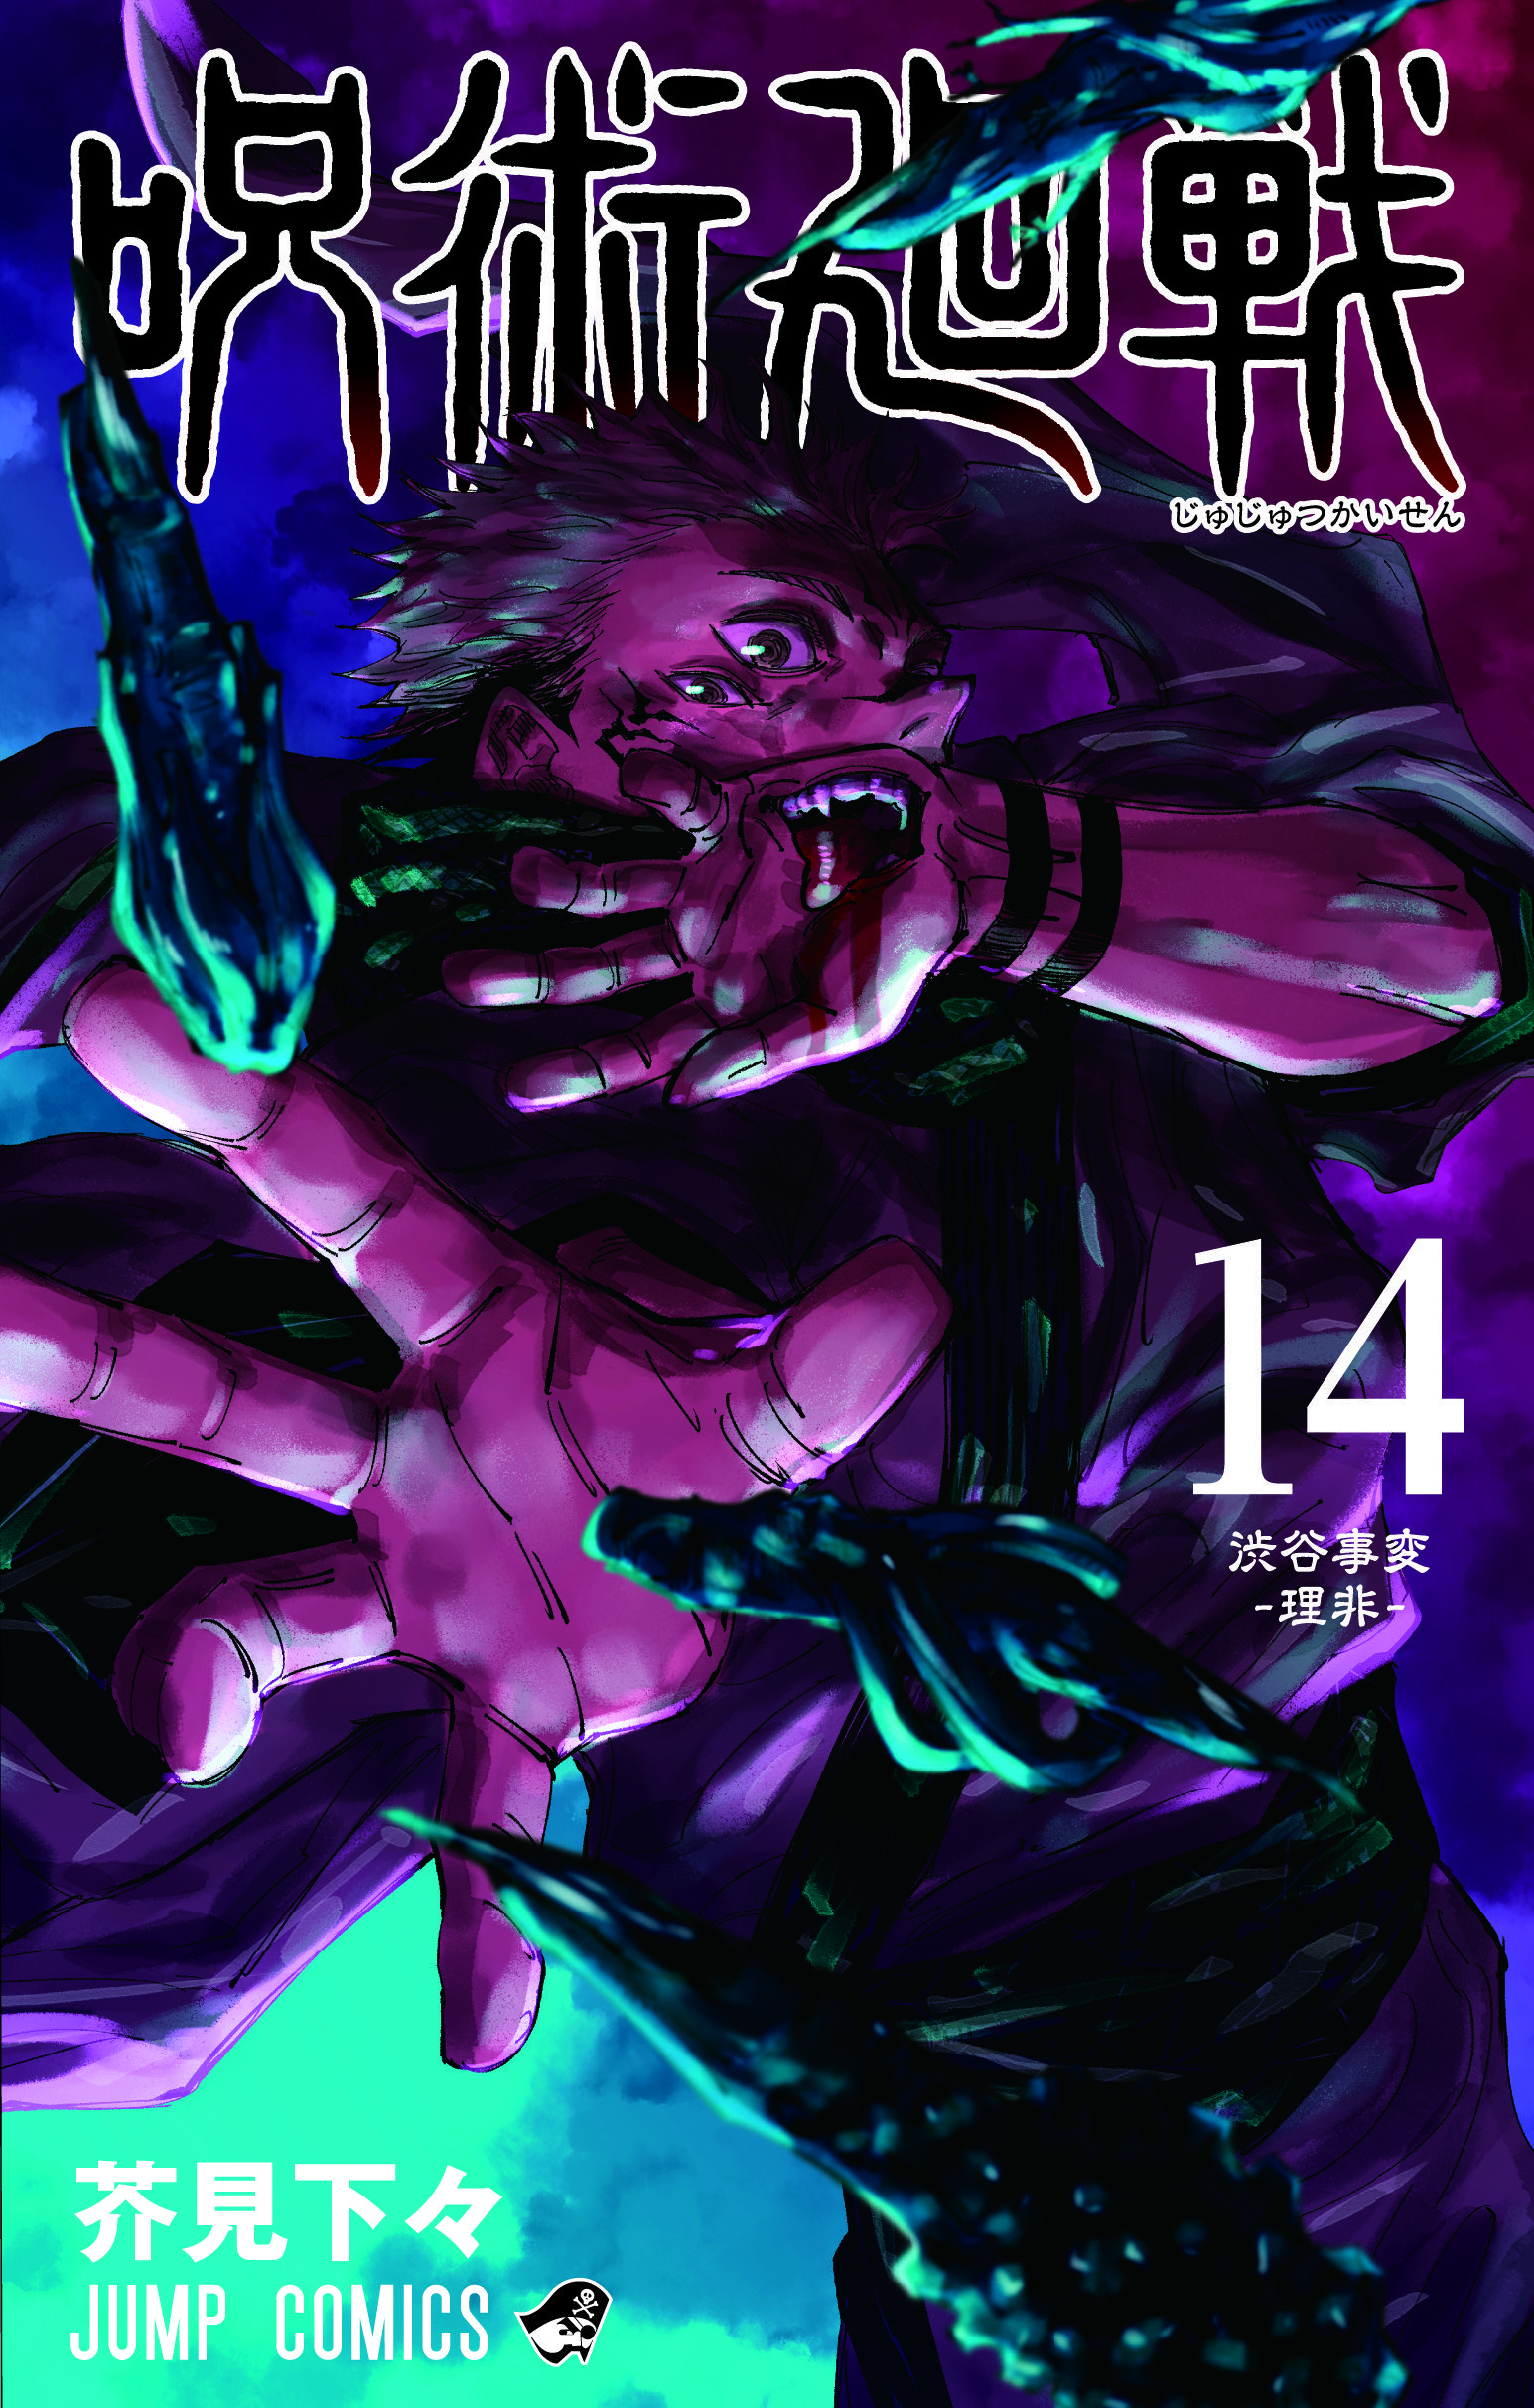 Jujutsu Kaisen 15 million - Volume 14 cover